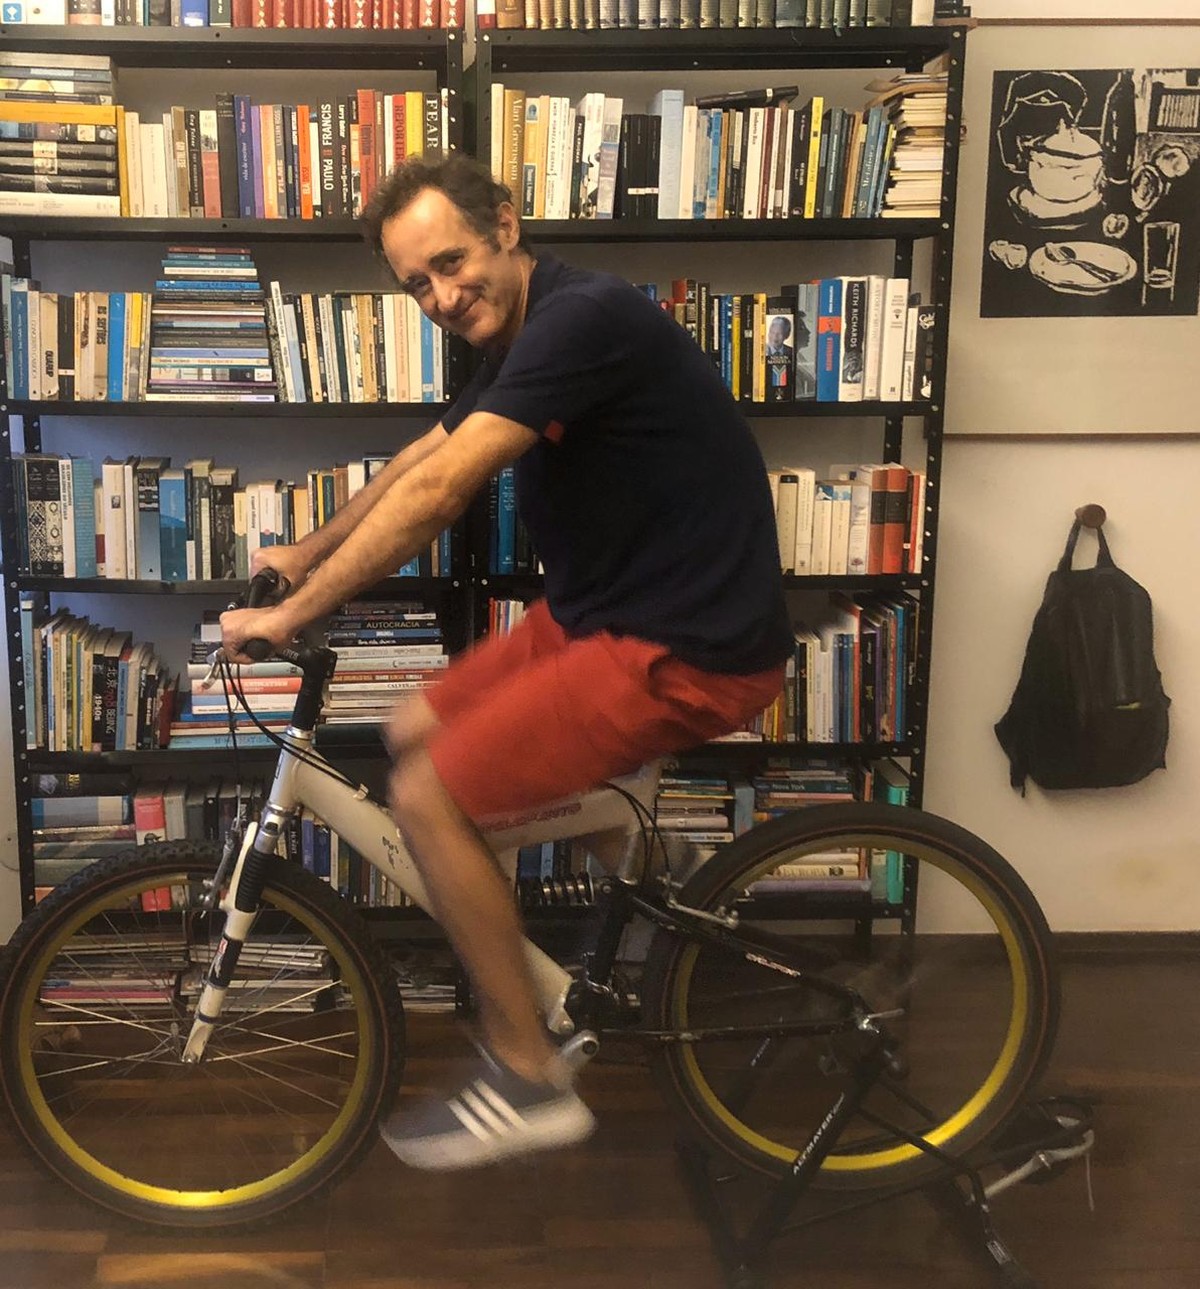 Jogo de Trilha de Bicicleta – Apps no Google Play